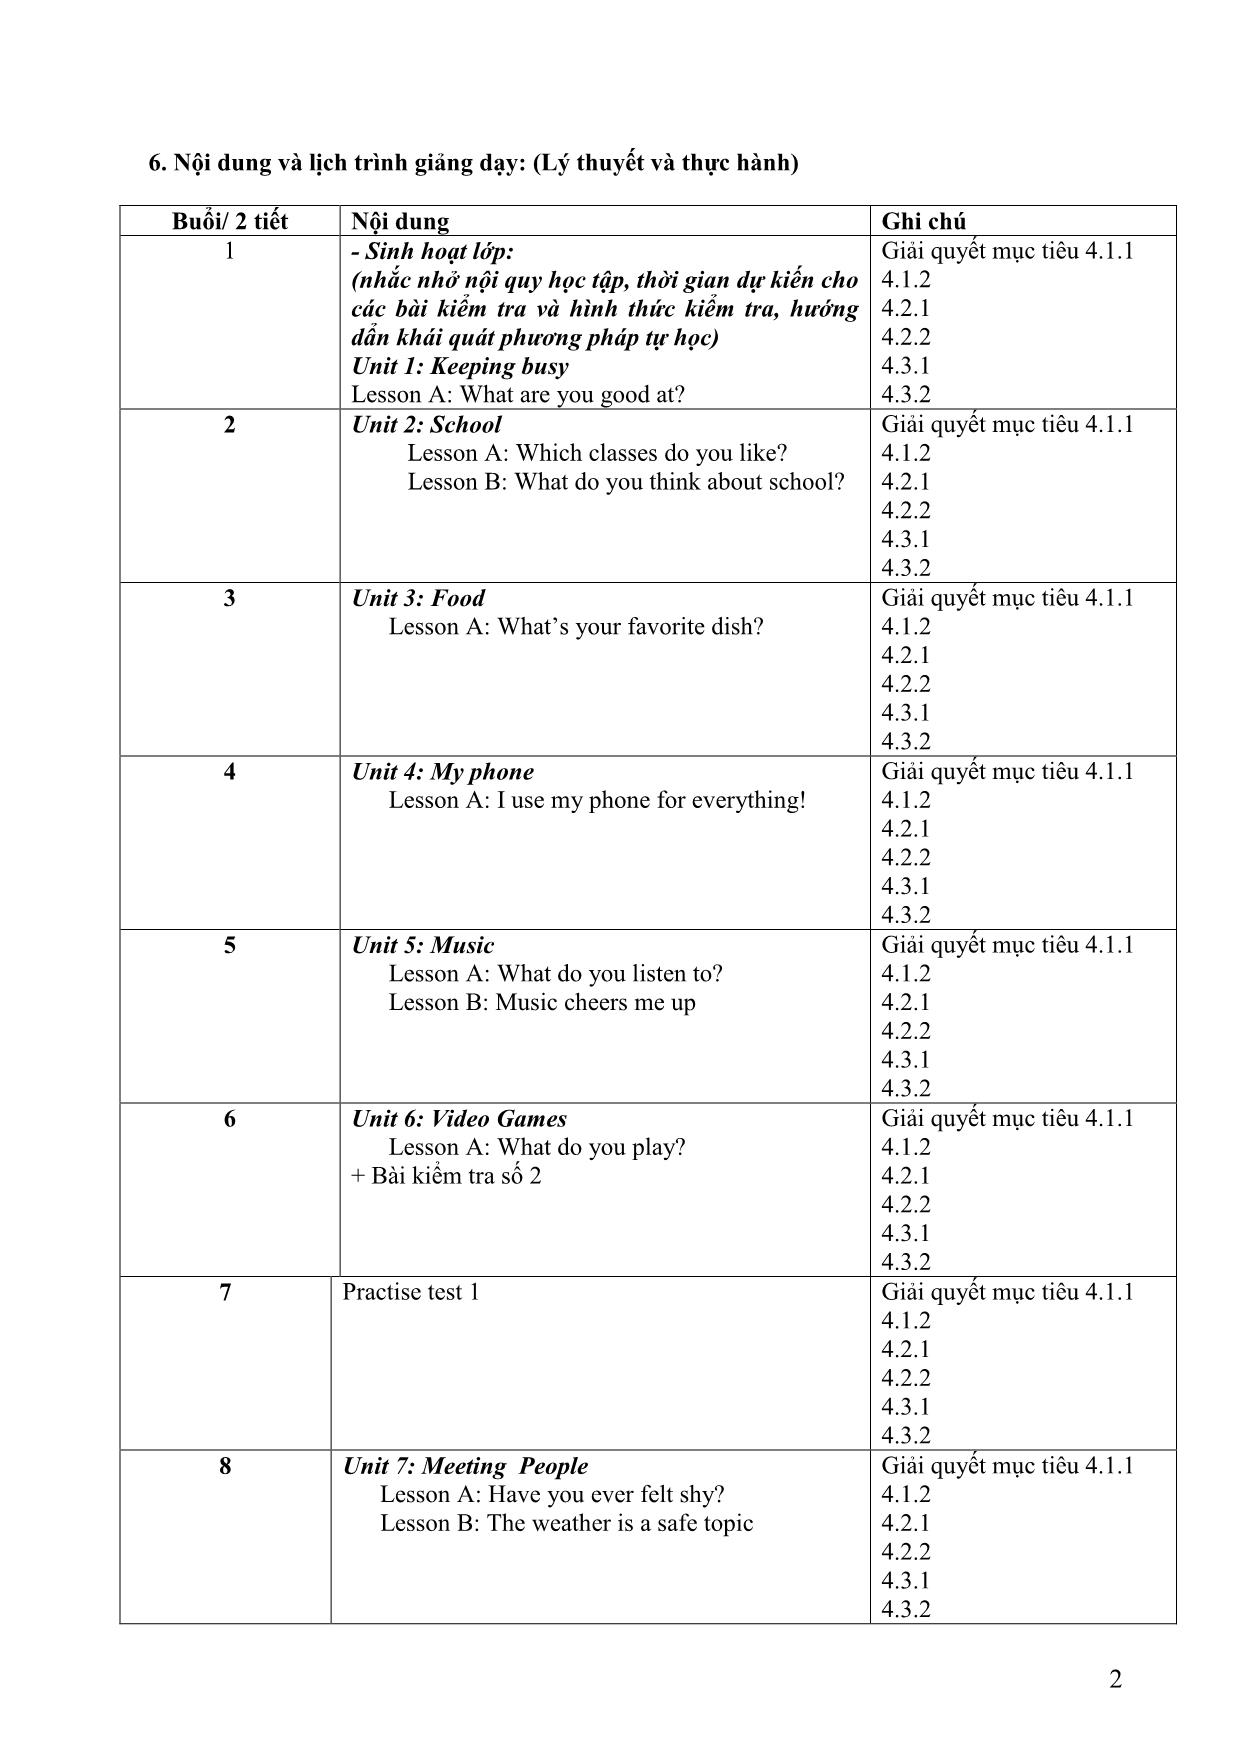 Đề cương học phần Nghe tiếng Anh 2 (Listening 2) trang 2